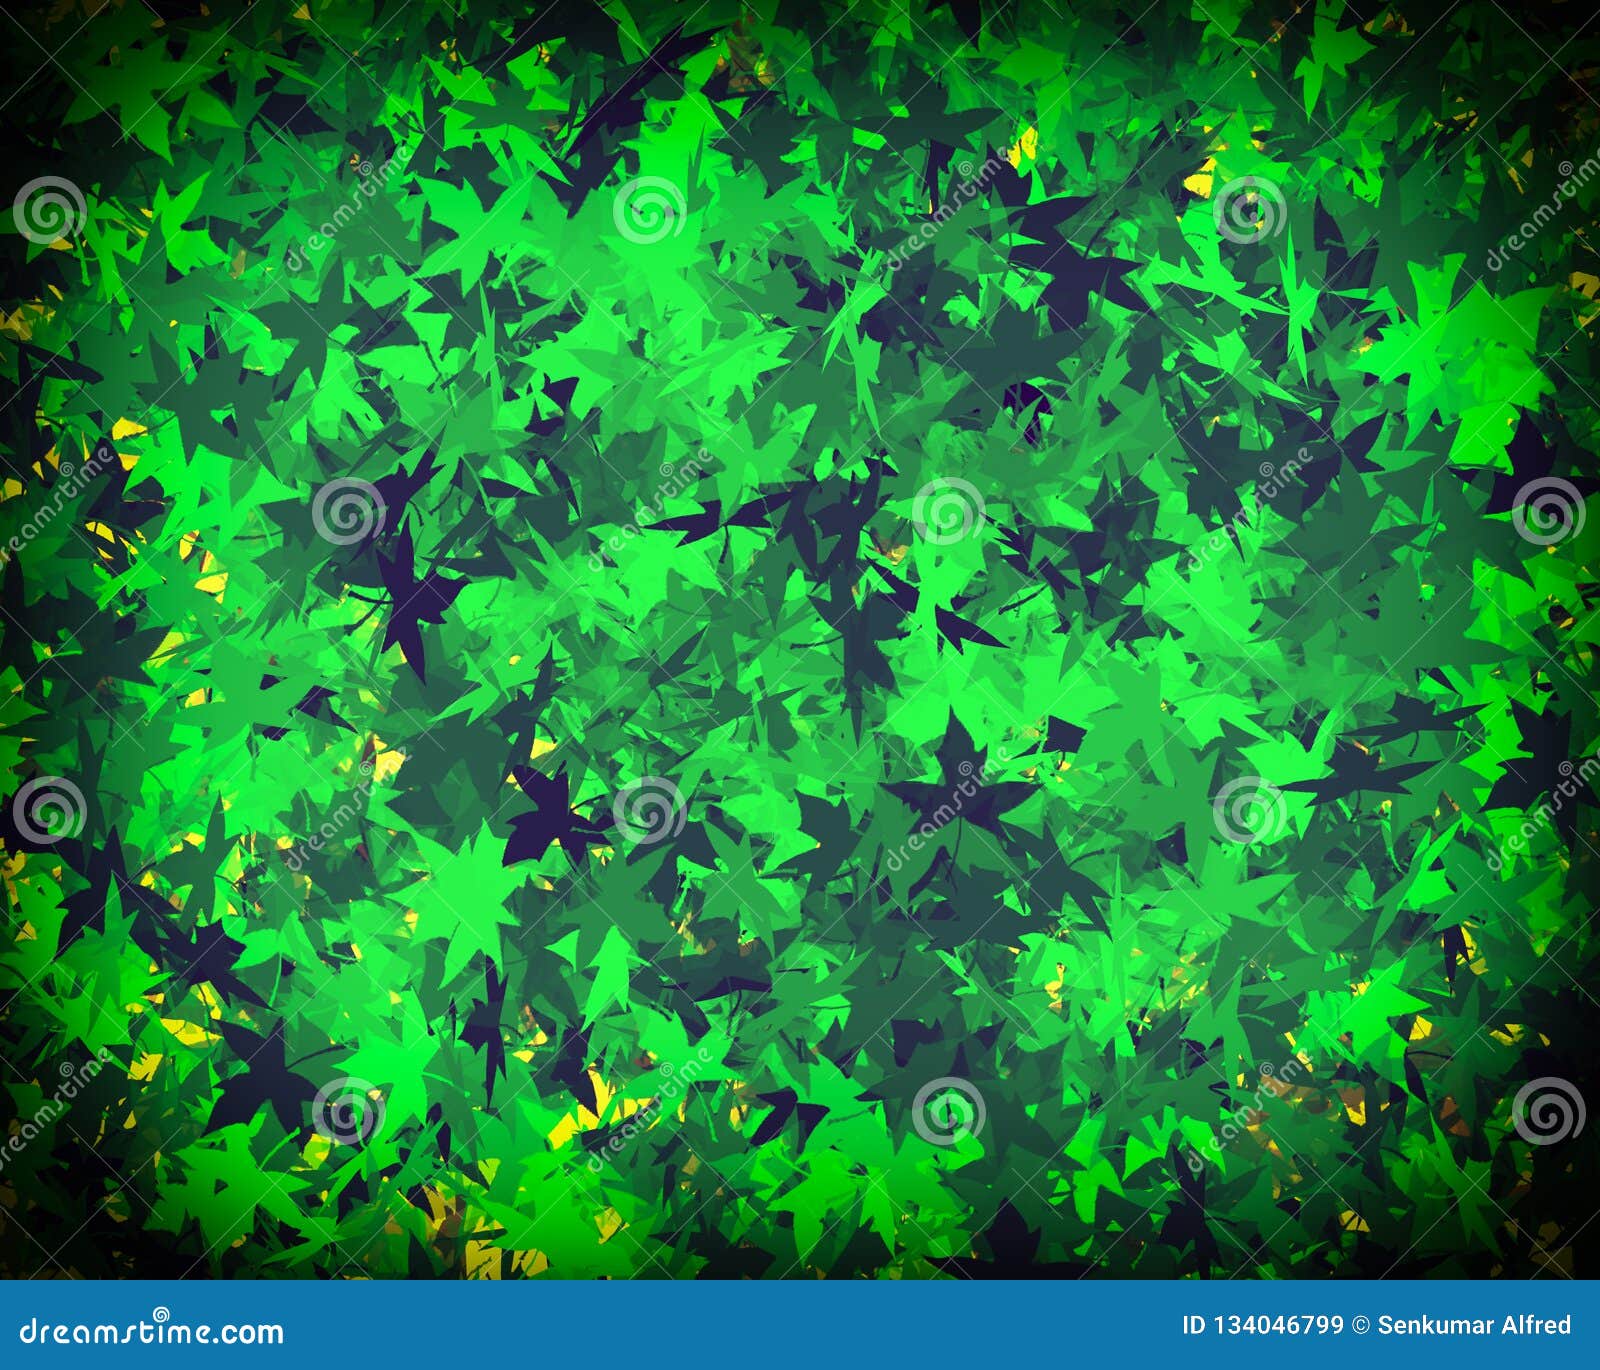 Với những bức ảnh nền lá xanh, bạn sẽ cảm thấy như đang đứng giữa một rừng cây rậm rạp. Chúng tôi cung cấp những tác phẩm nghệ thuật độc đáo, sẵn sàng mang đến cho bạn trải nghiệm tuyệt vời bằng màu sắc xanh lá cây. Ghé thăm ngay!